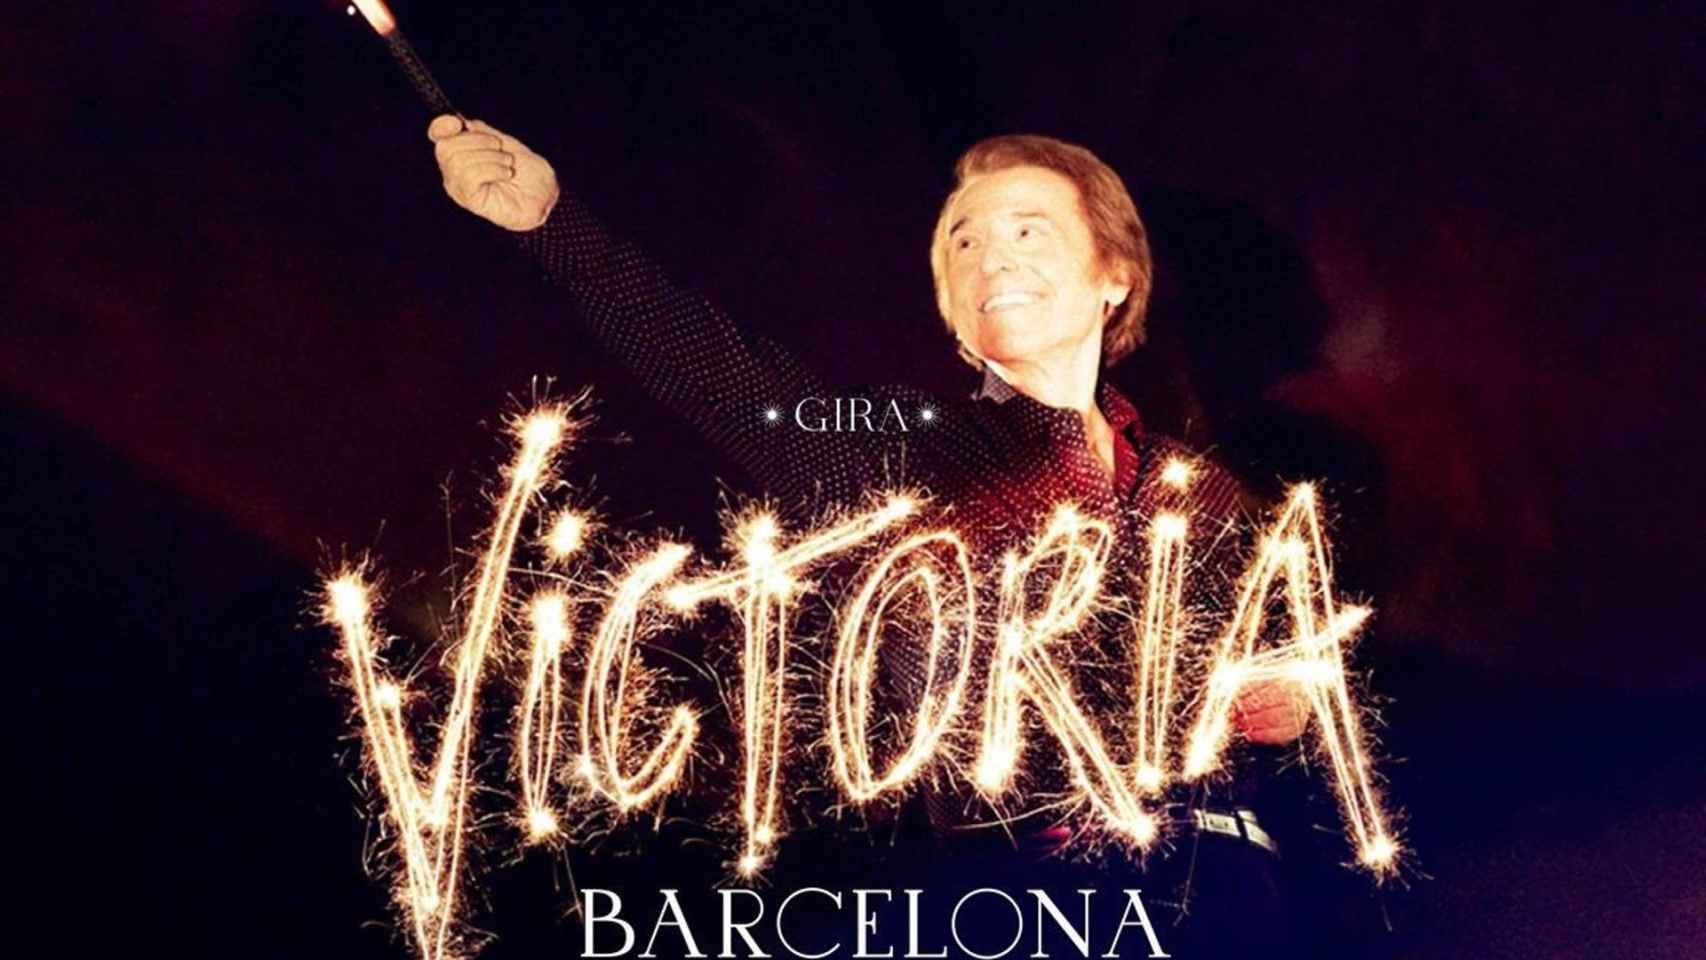 Cartel del concierto de Raphael en Barcelona el 2 de diciembre - THE PROJECT